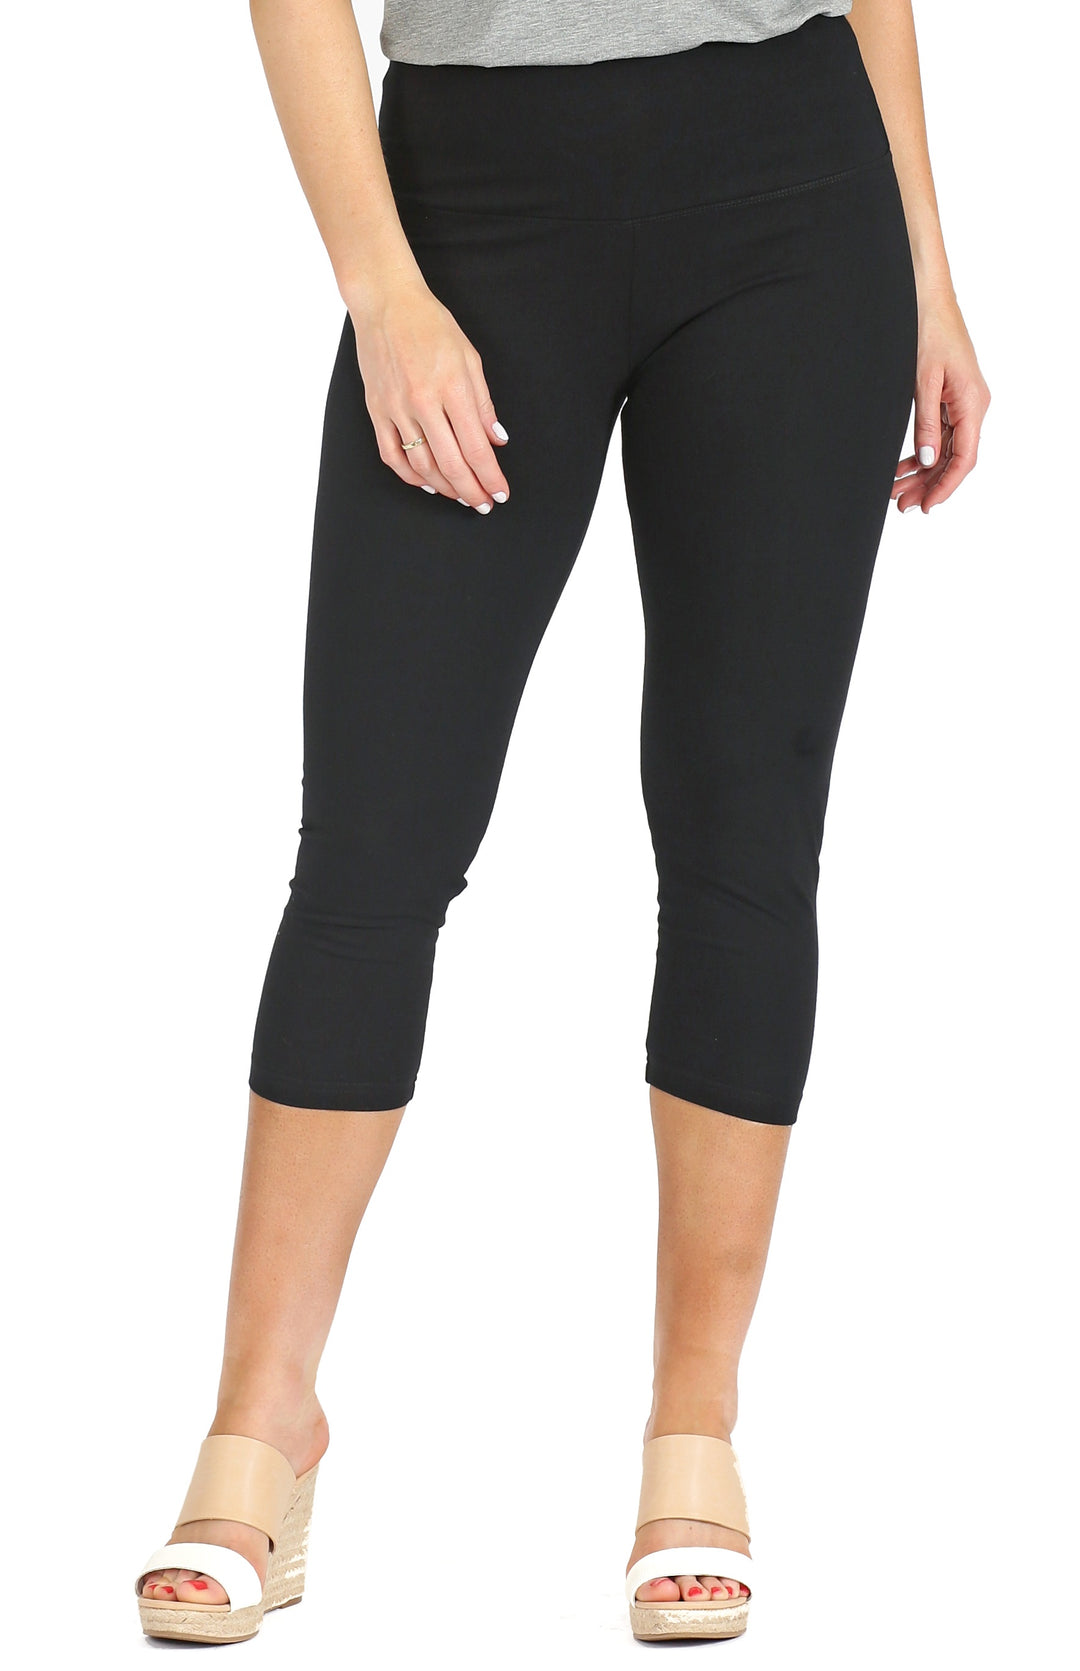 LOVE AND FIT Guardian Capri Leggings - ShopStyle Plus Size Pants